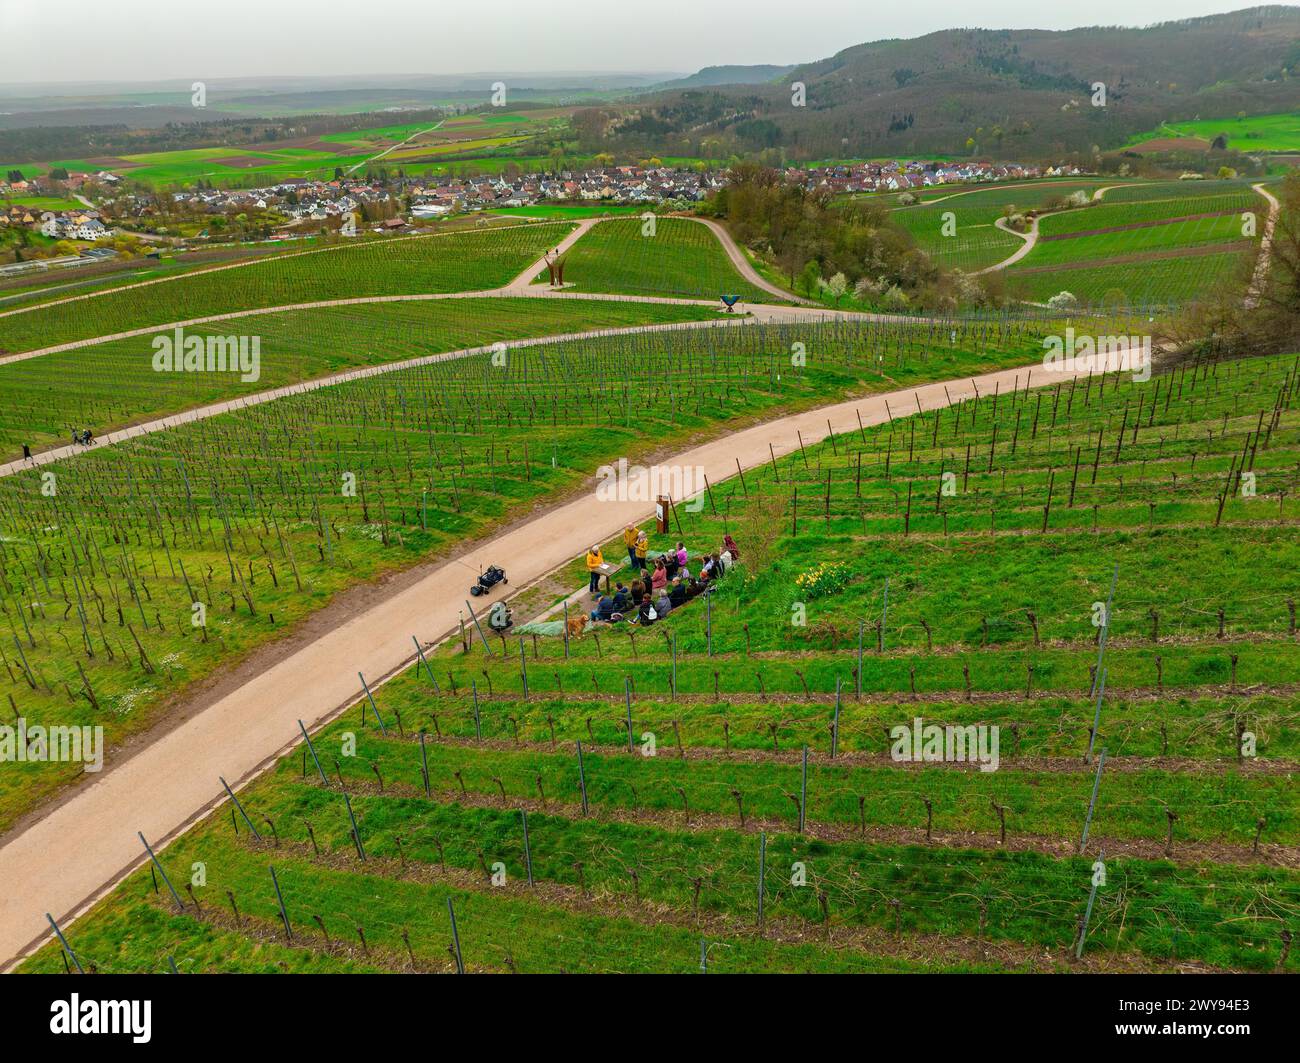 Groupe de personnes et de cyclistes en conversation sur une route menant à travers les vignobles, Jesus Grace Chruch, Weitblickweg, randonnée de Pâques, Hohenhaslach, Allemagne Banque D'Images